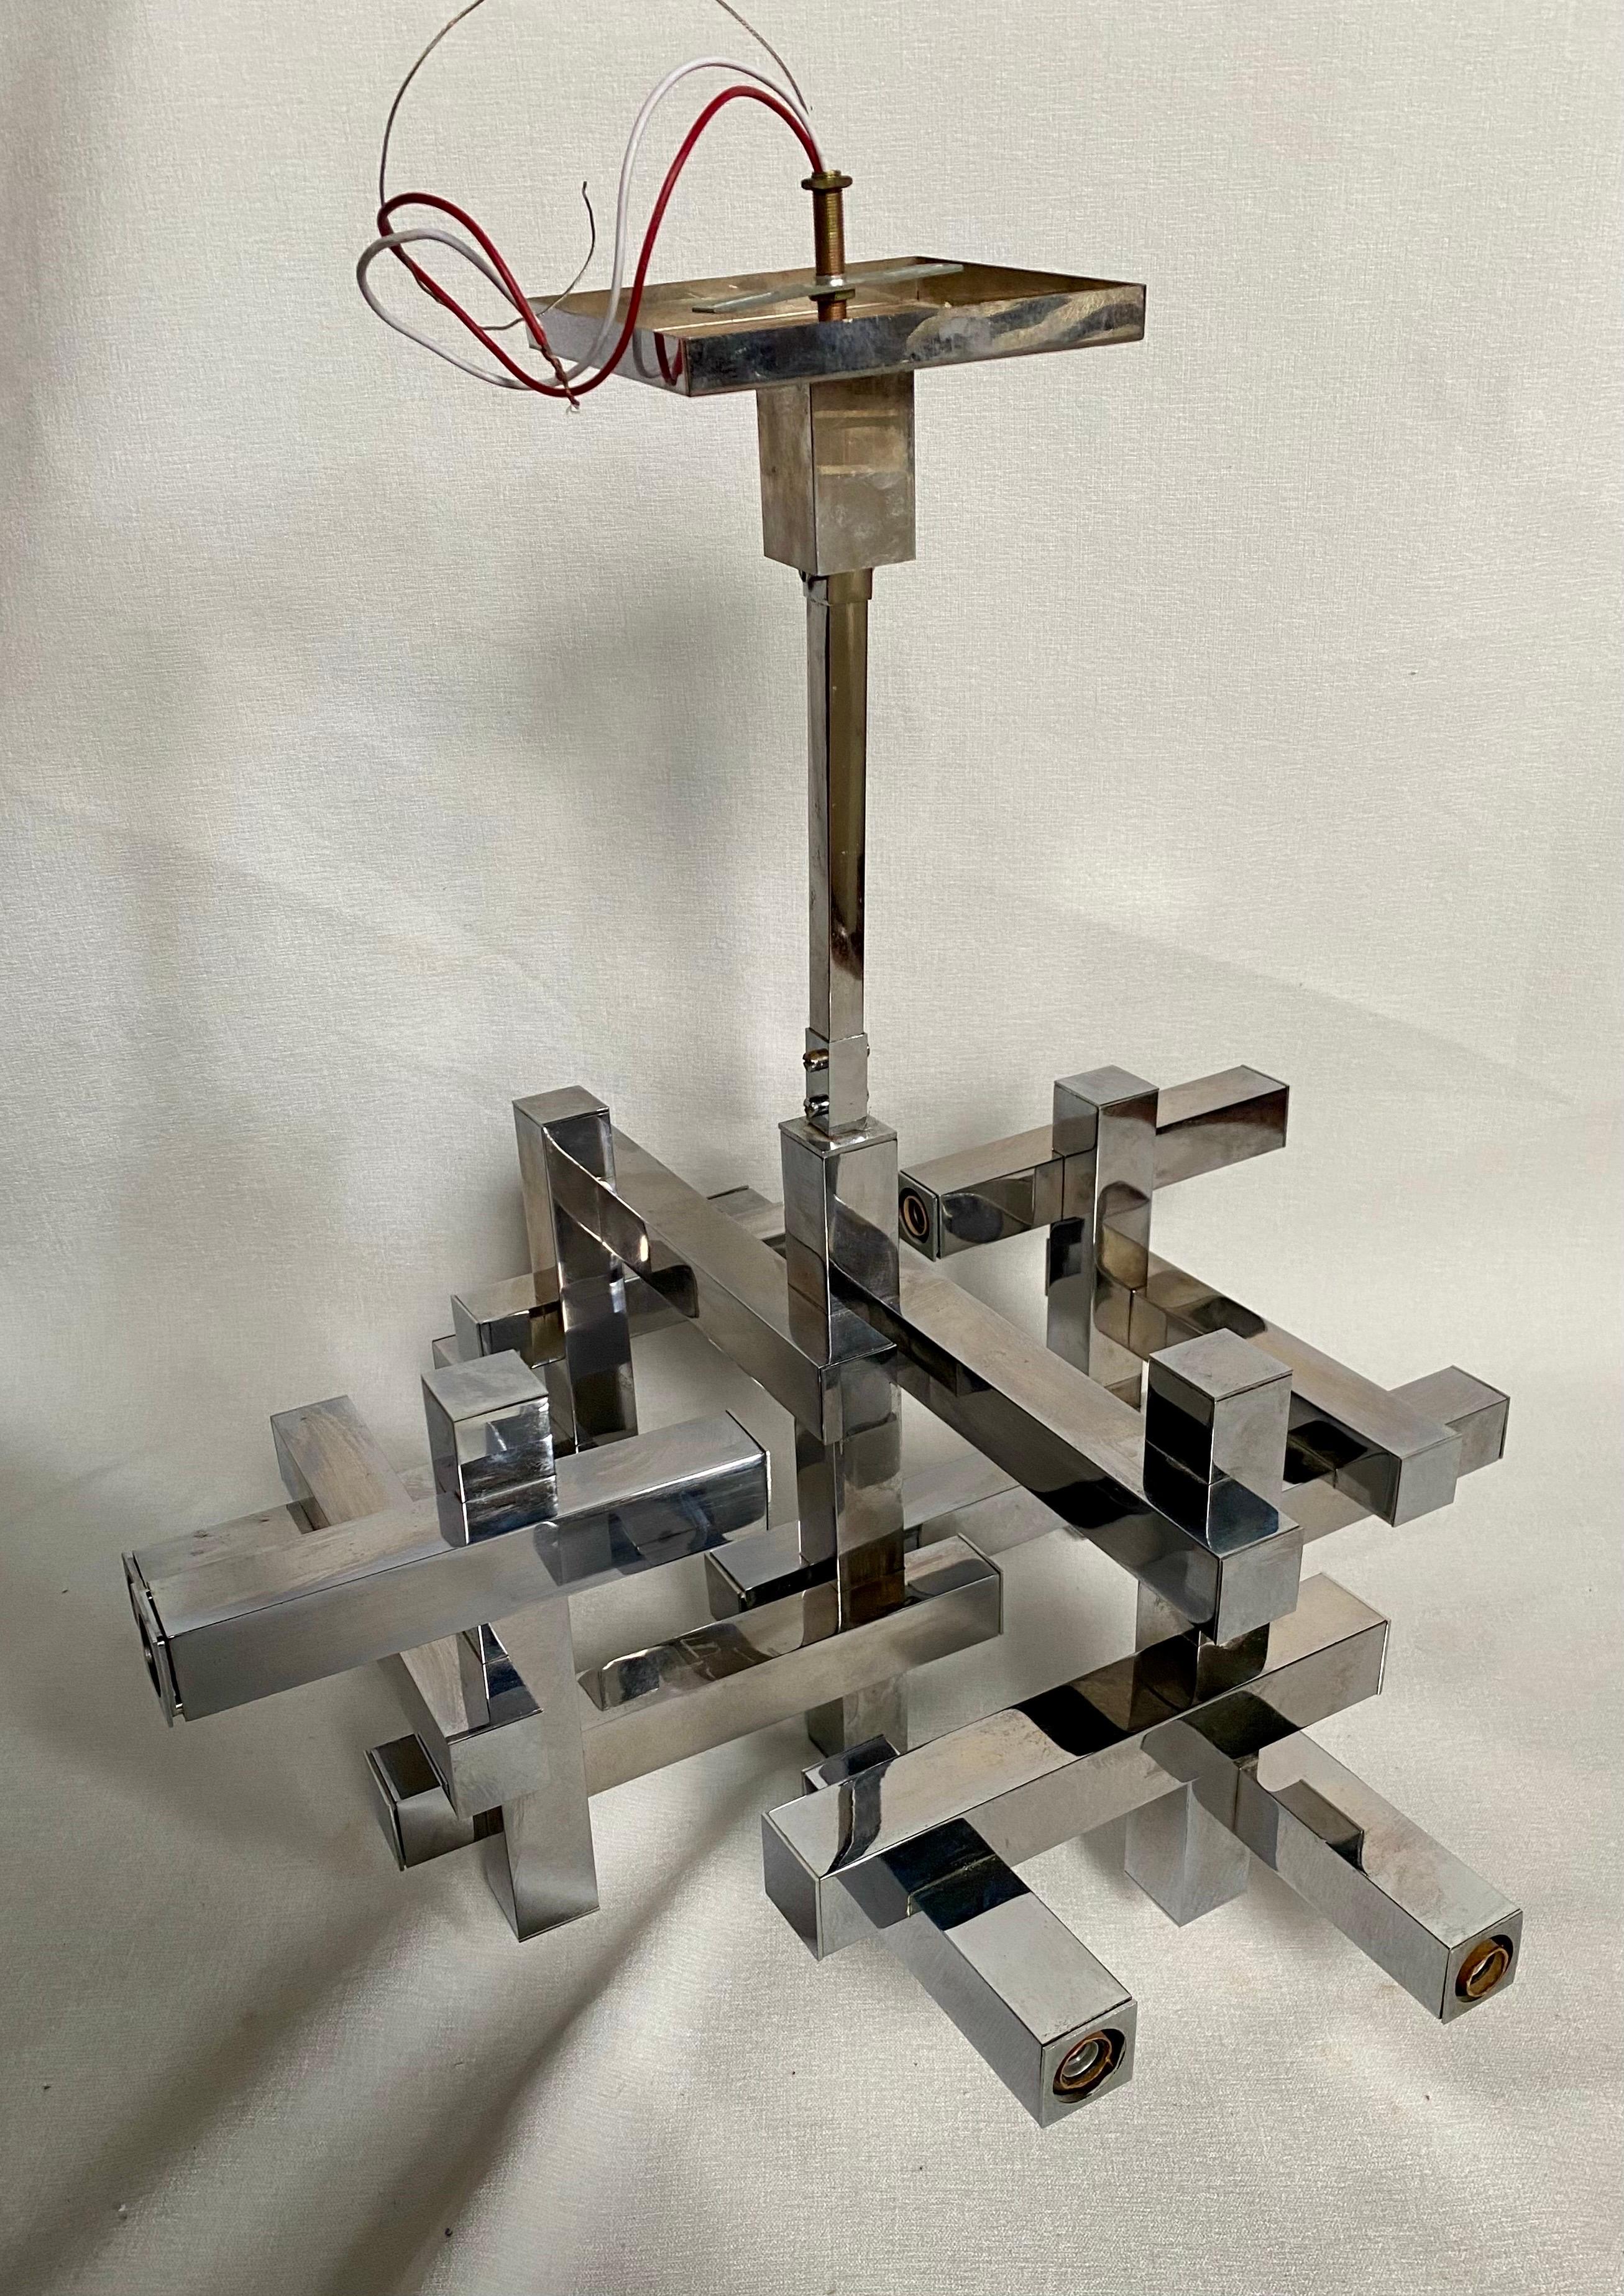 Moderne kubistische Kronleuchter-Pendelleuchte aus poliertem Chrom von Gaetano Sciolari.  Dieser skulpturale Kronleuchter in geometrischer Form hat mehrere quadratische, röhrenförmige Arme.  Die Leuchte fasst 10 Glühbirnen mit Kerzensockel.  